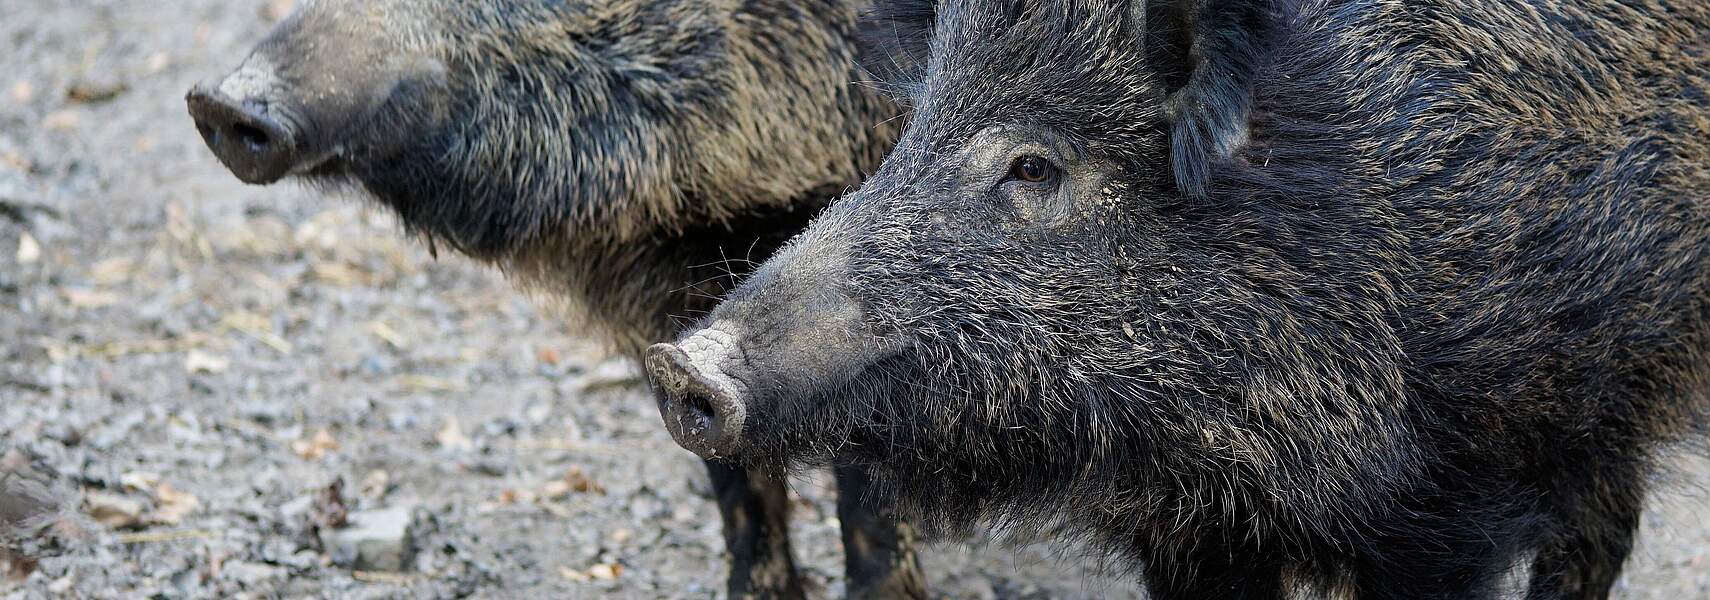 Informationen zur Afrikanischen Schweinepest